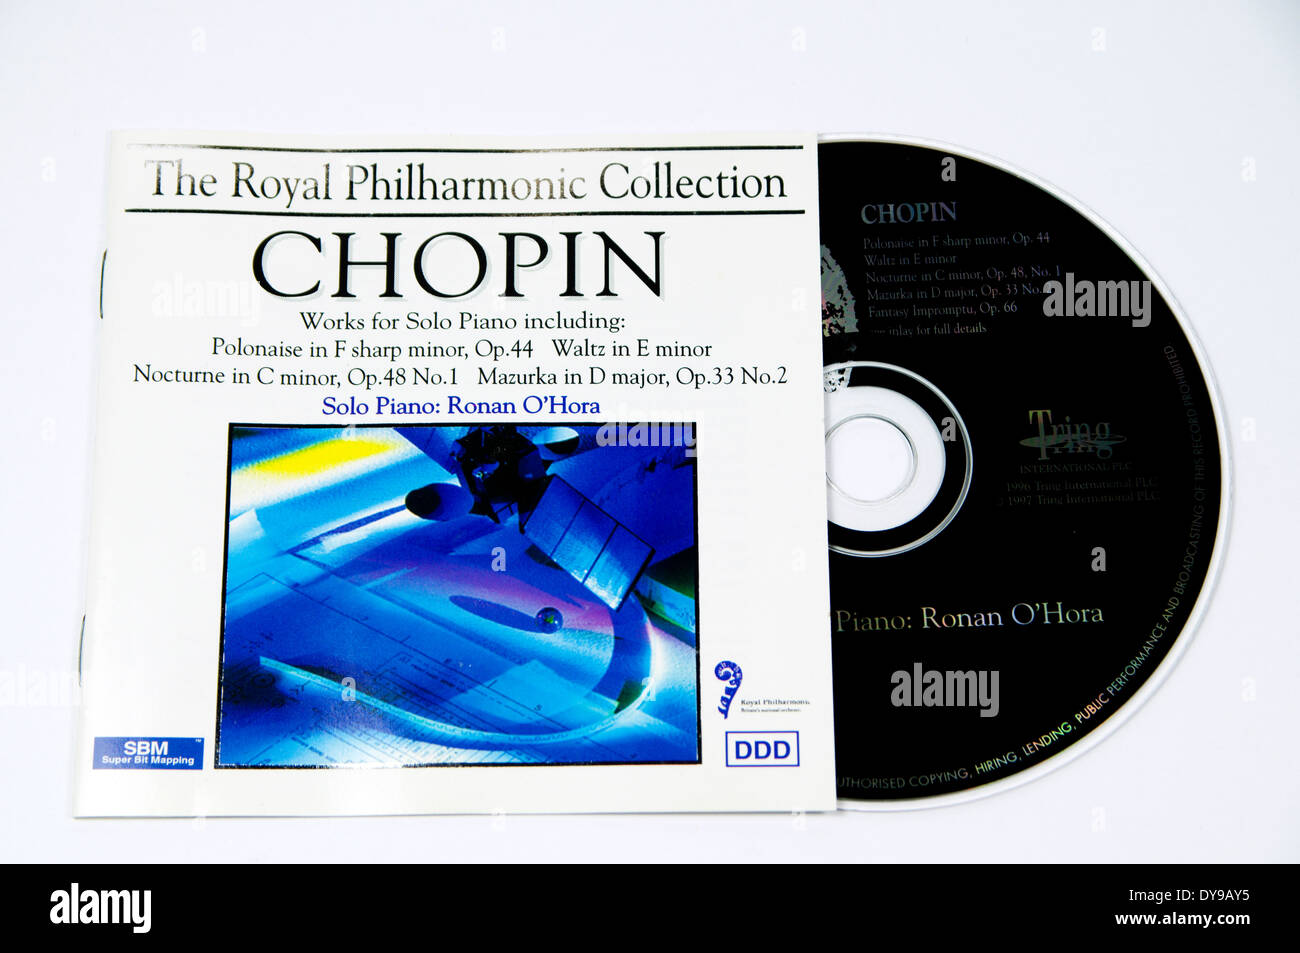 Copin cd de música por la Royal Philharmonic Orchestra Foto de stock